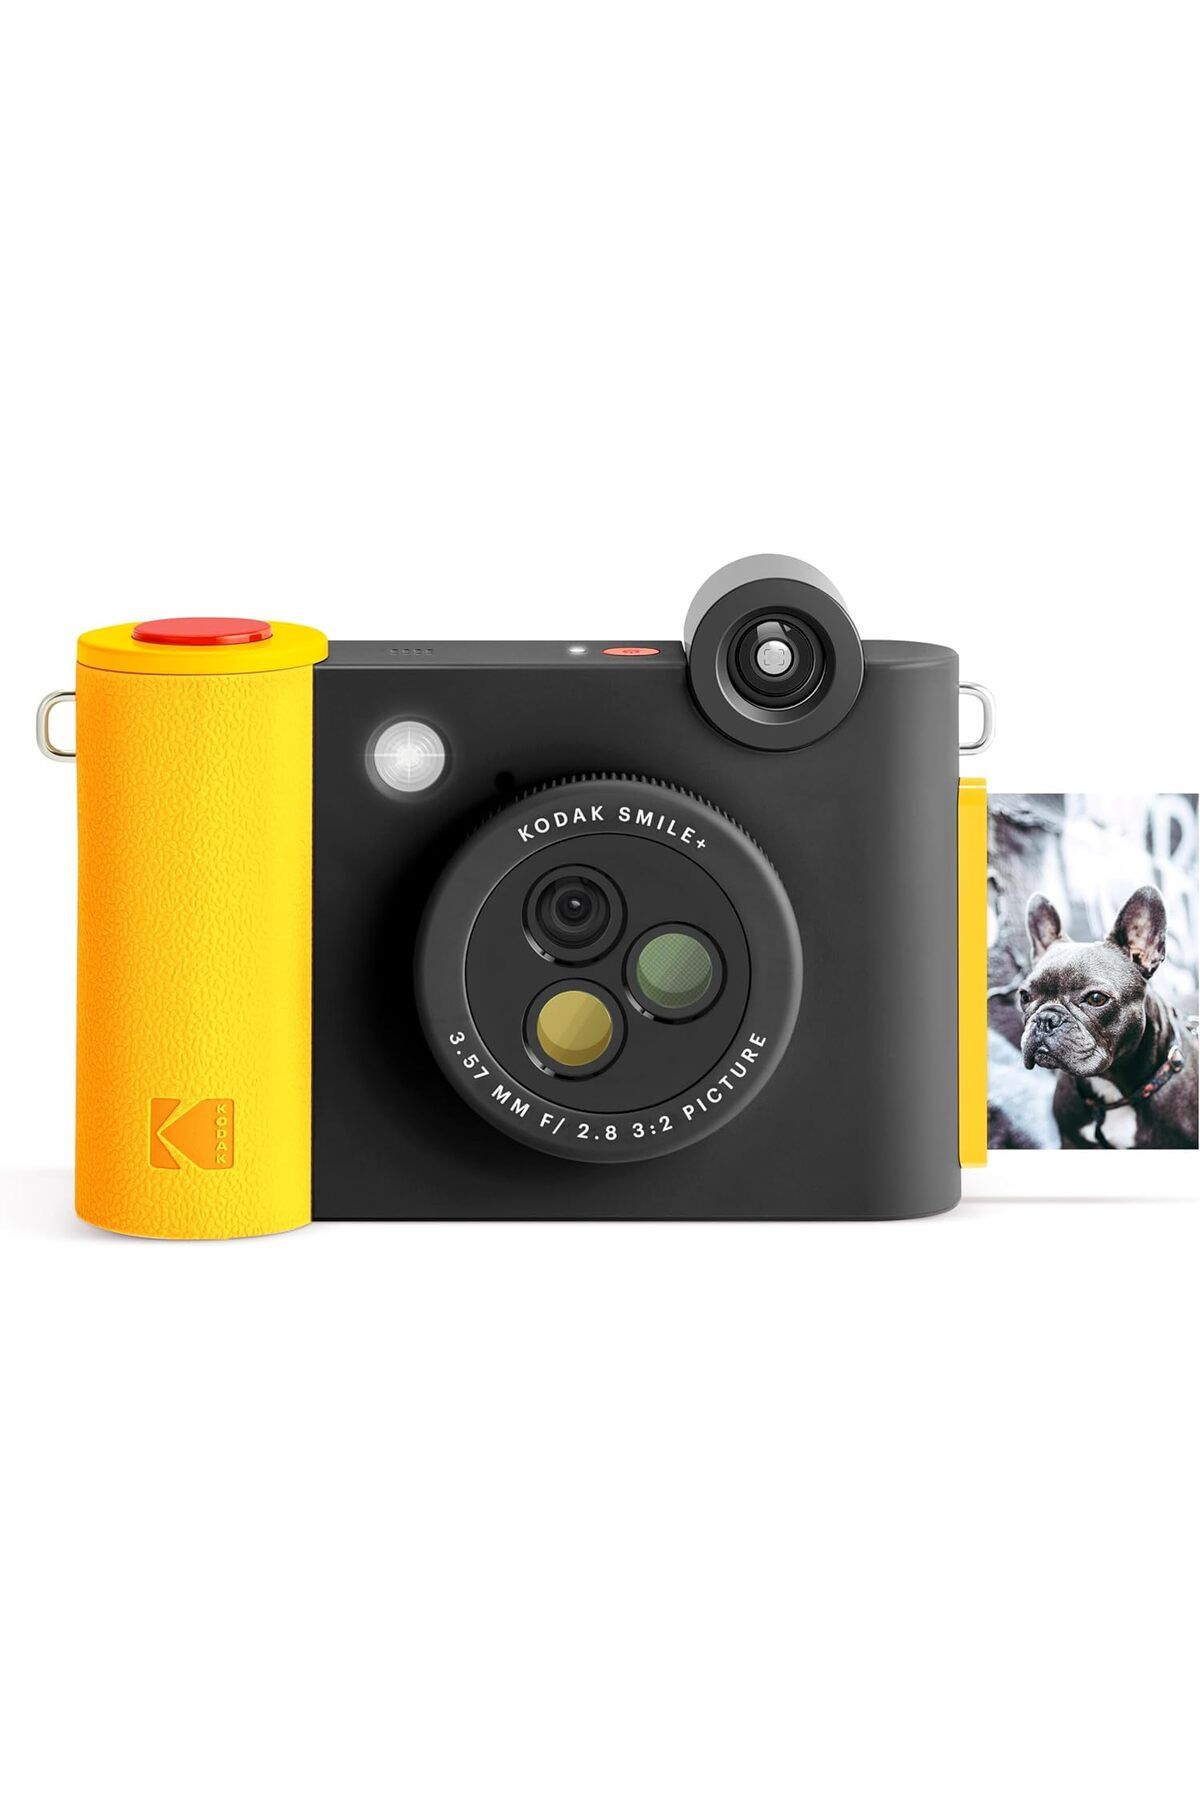 Kodak Smile+ Kablosuz Dijital Anlık Fotoğraf Makinesi Efektli Objektifli, 5x3 İnç Çinko Fotoğraf Baskısı